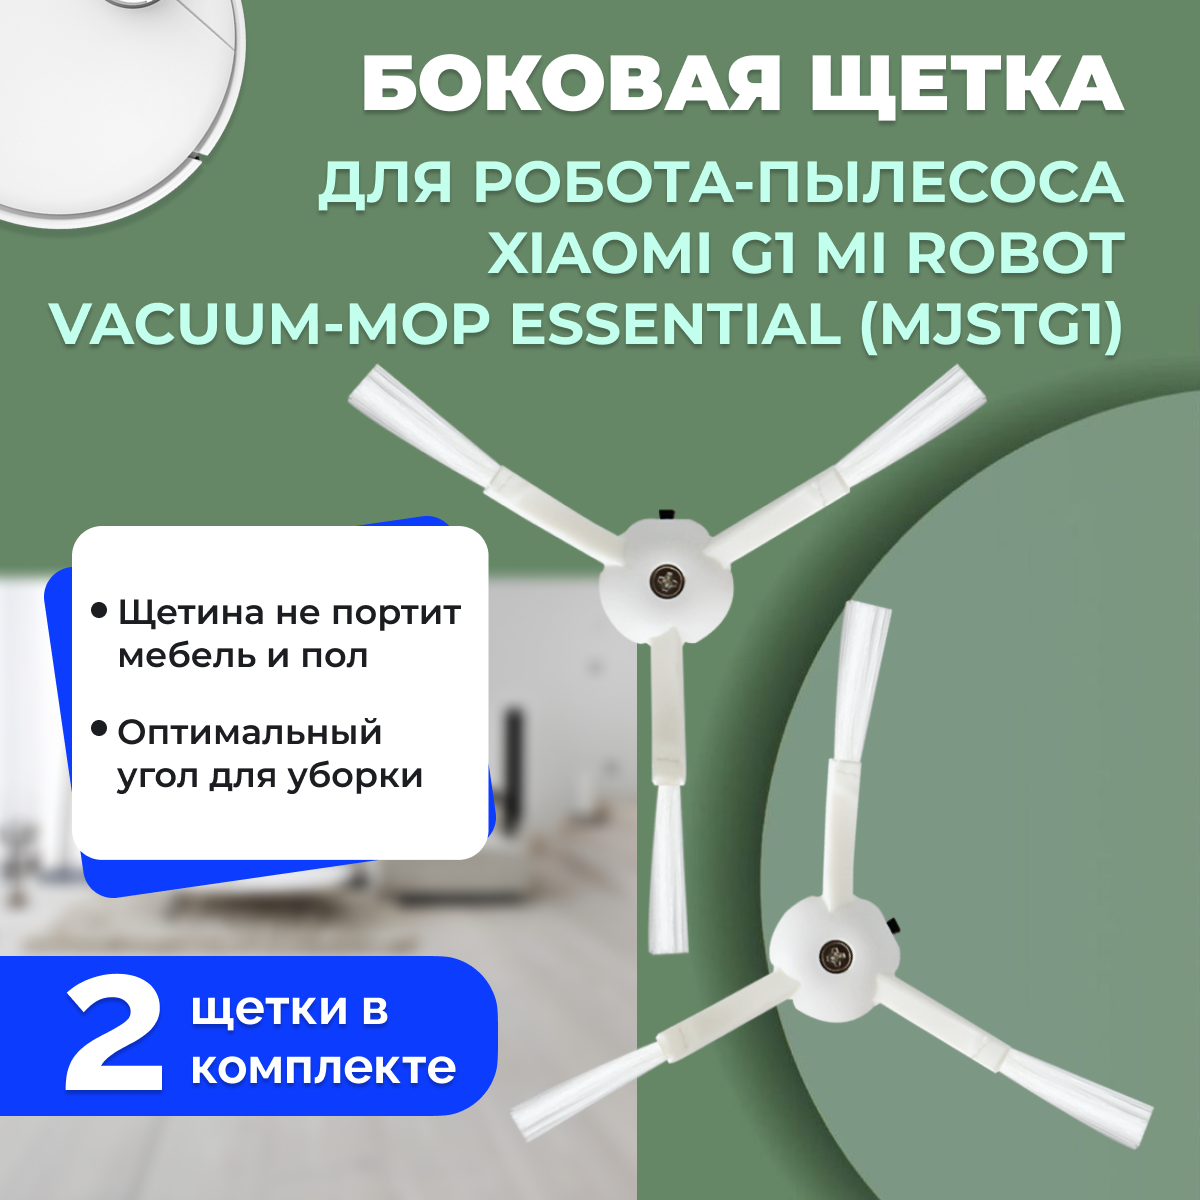 Боковая щетка для робота-пылесоса Xiaomi G1 Mi Robot Vacuum-Mop Essential (MJSTG1) 558242, фото 1